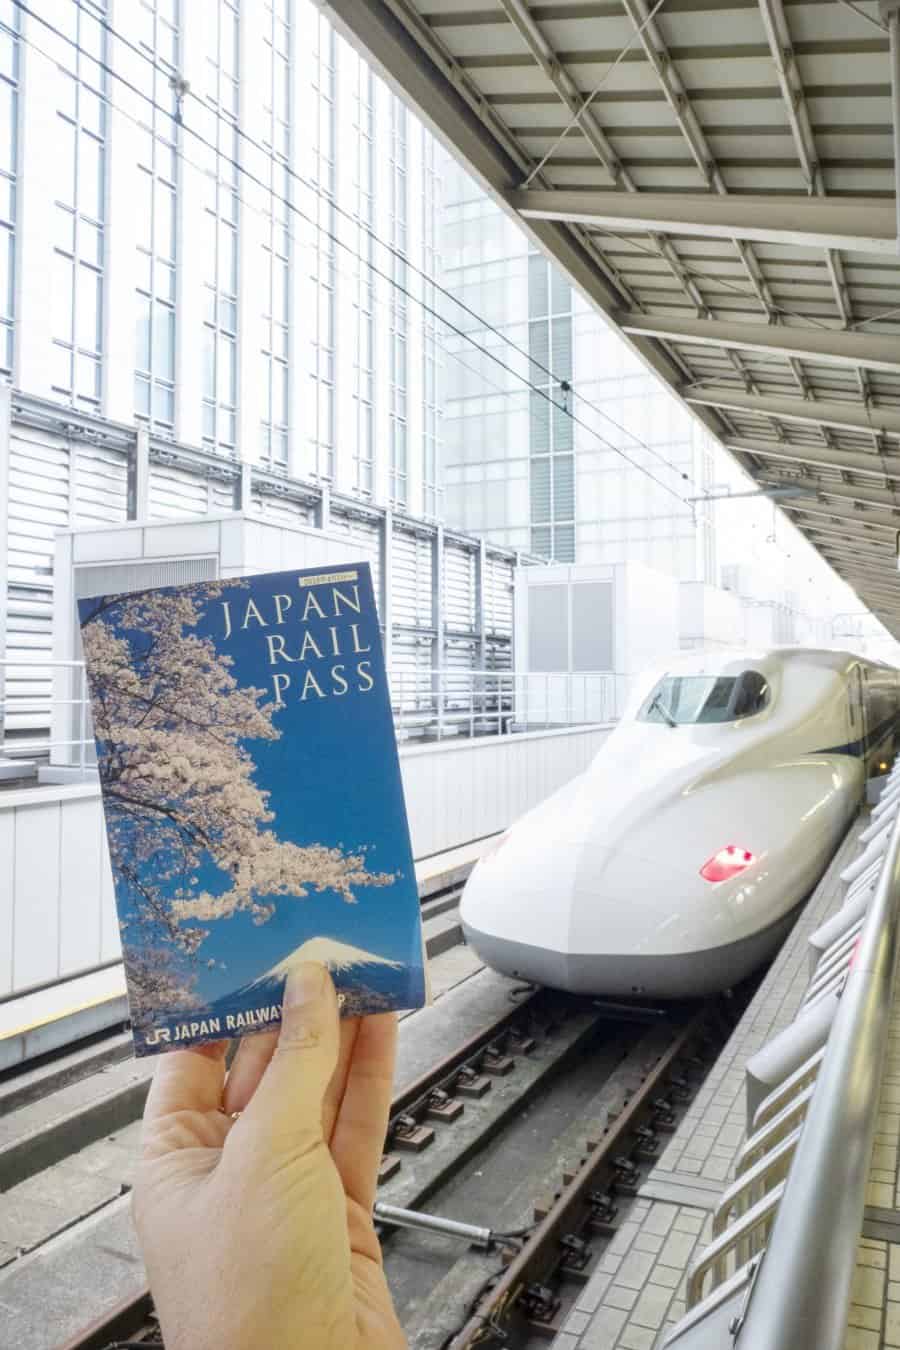 JR Rail Pass and Train at Tokyo Station